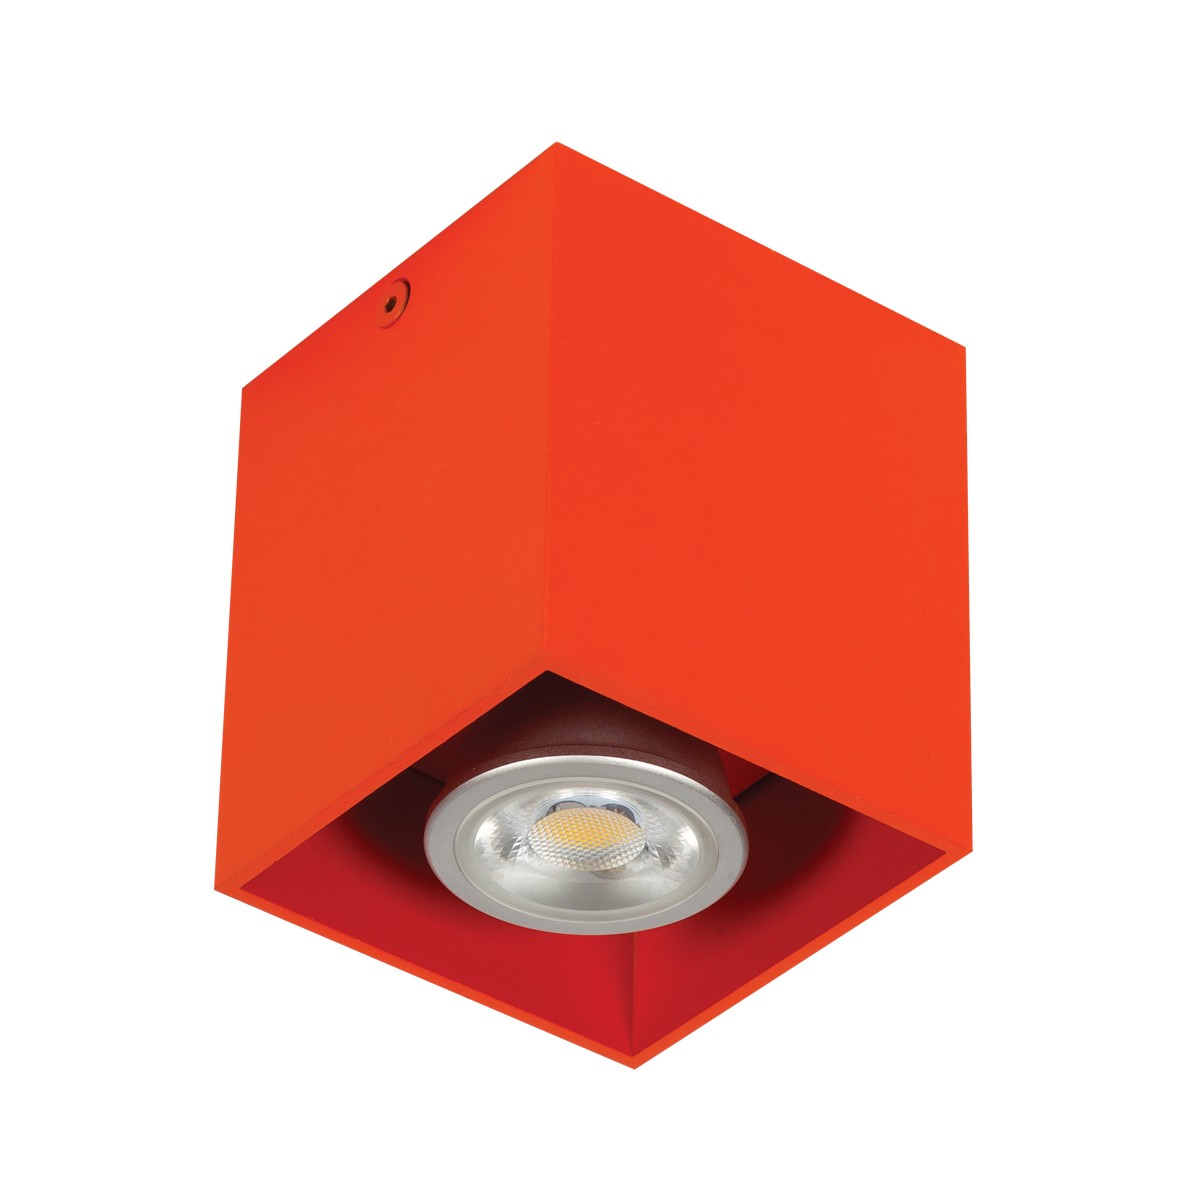 Φωτιστικό αλουμινίου οροφής κύβος  GU10 max 35W πορτοκαλί  82χ82χ95 VK/03001/OR